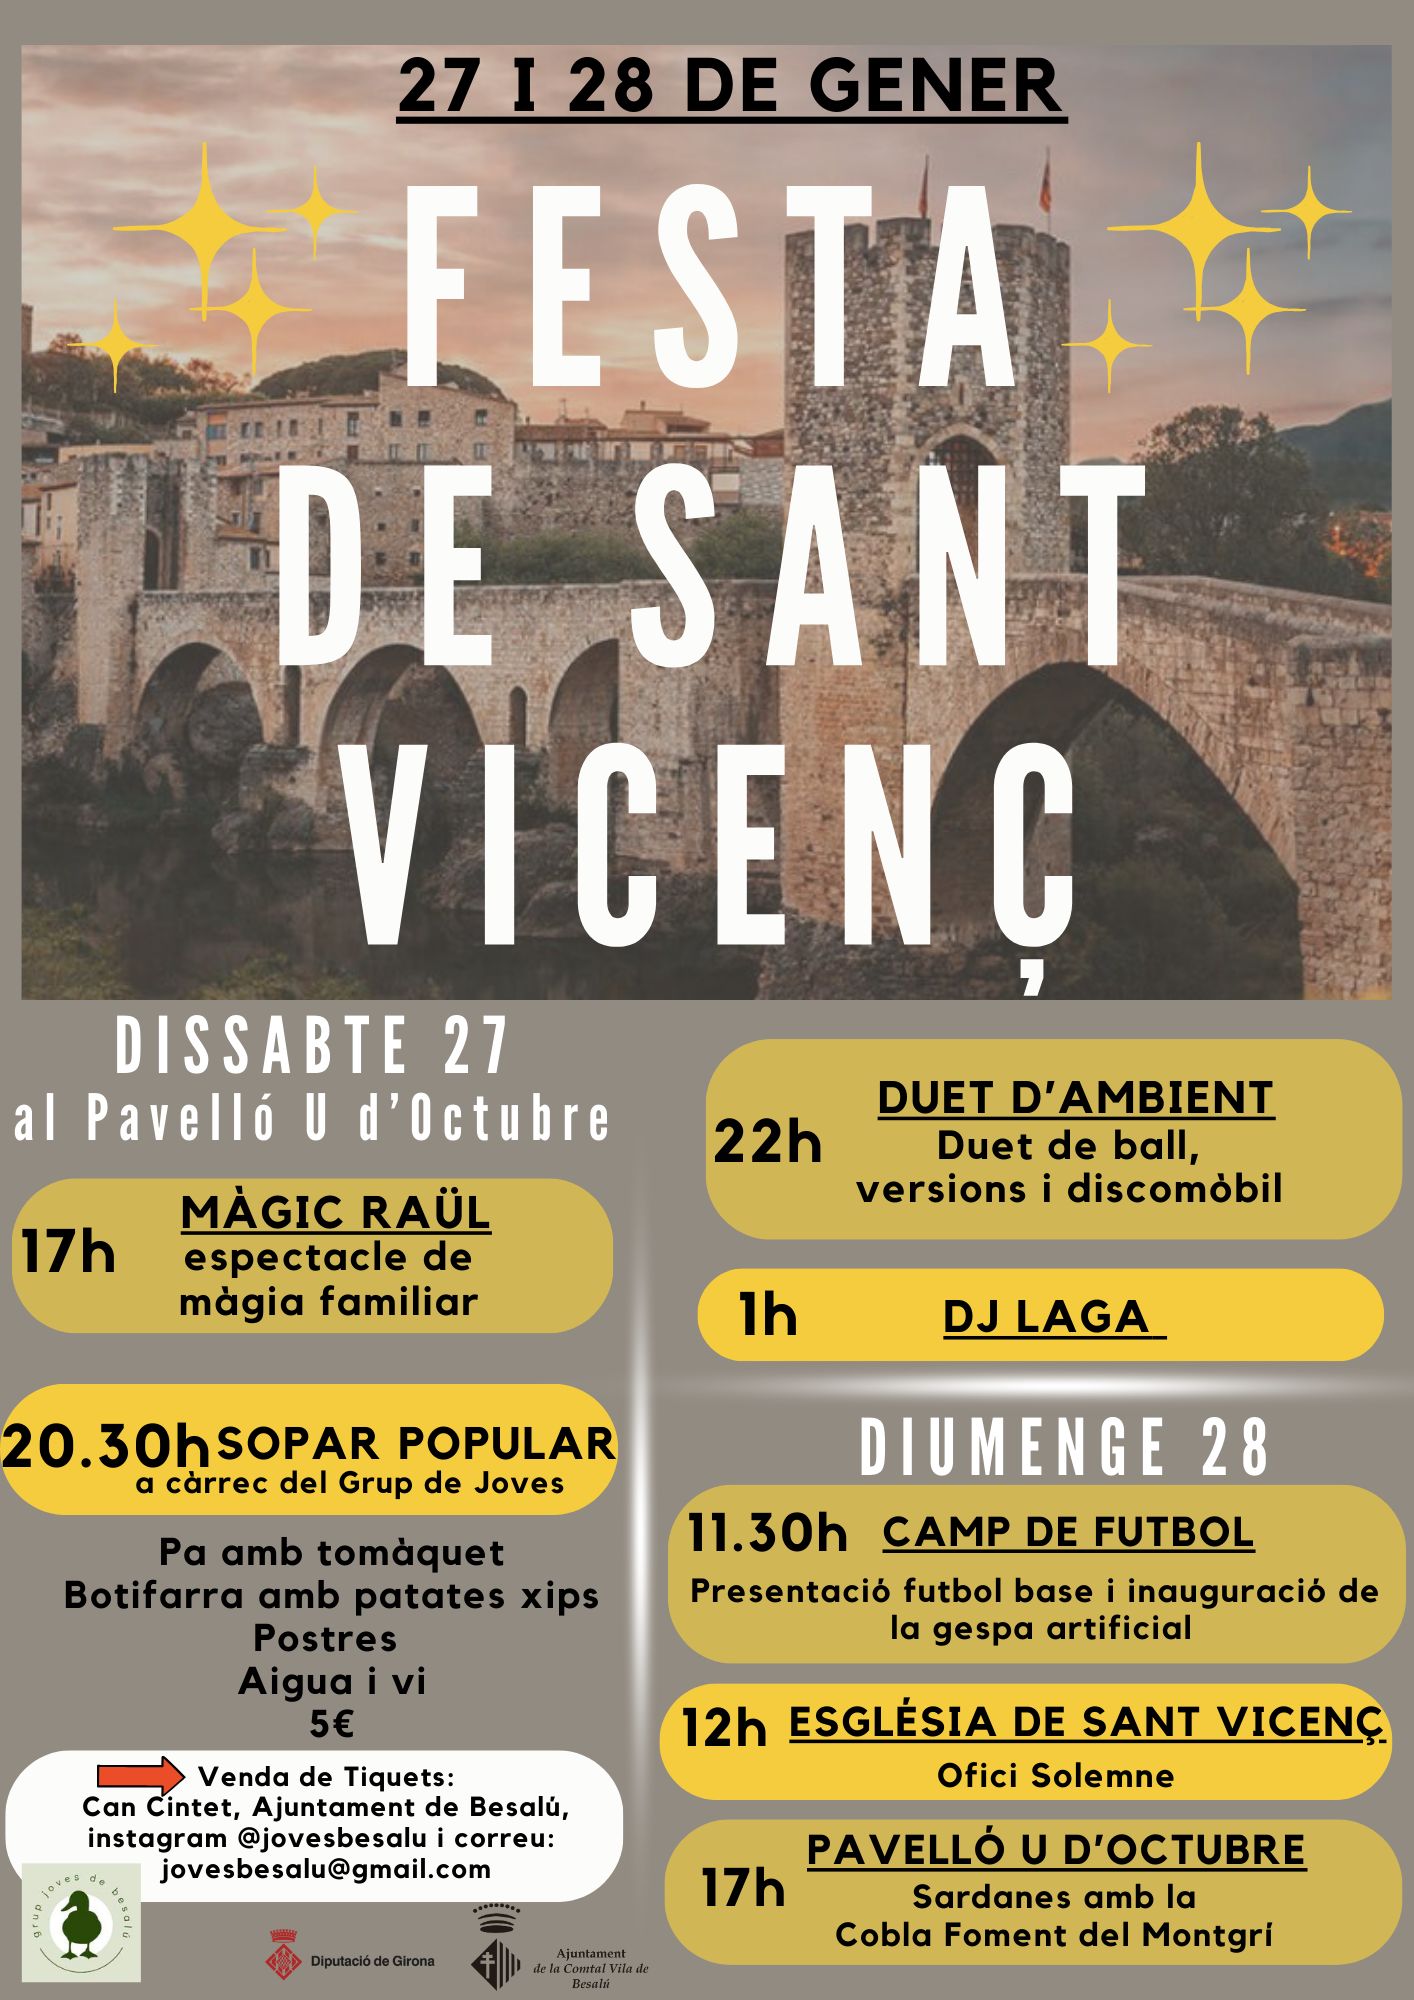 Celebra la Festa de Sant Vicenç a la màgica vila de Besalú,